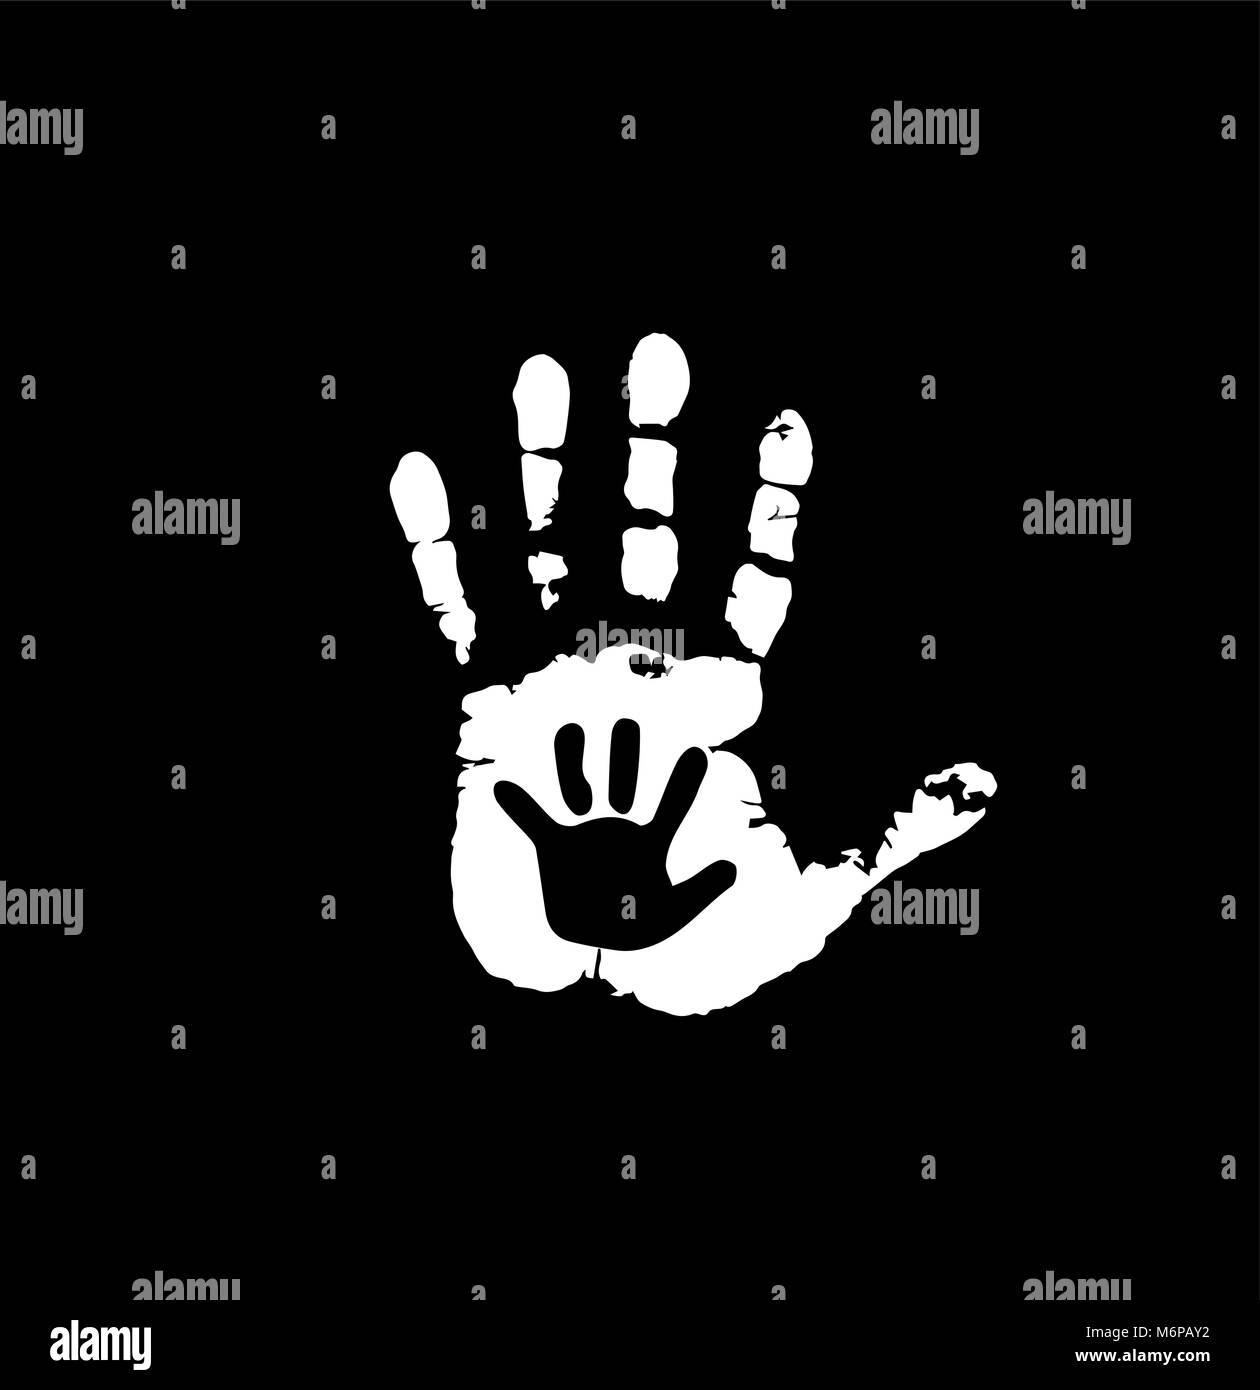 Bianco e nero silhouette di adulto e bambino le mani nel cuore. La madre o il padre e figlio handprint. Palm di donna e bambino. Sociale illustrazione vettoriale Illustrazione Vettoriale